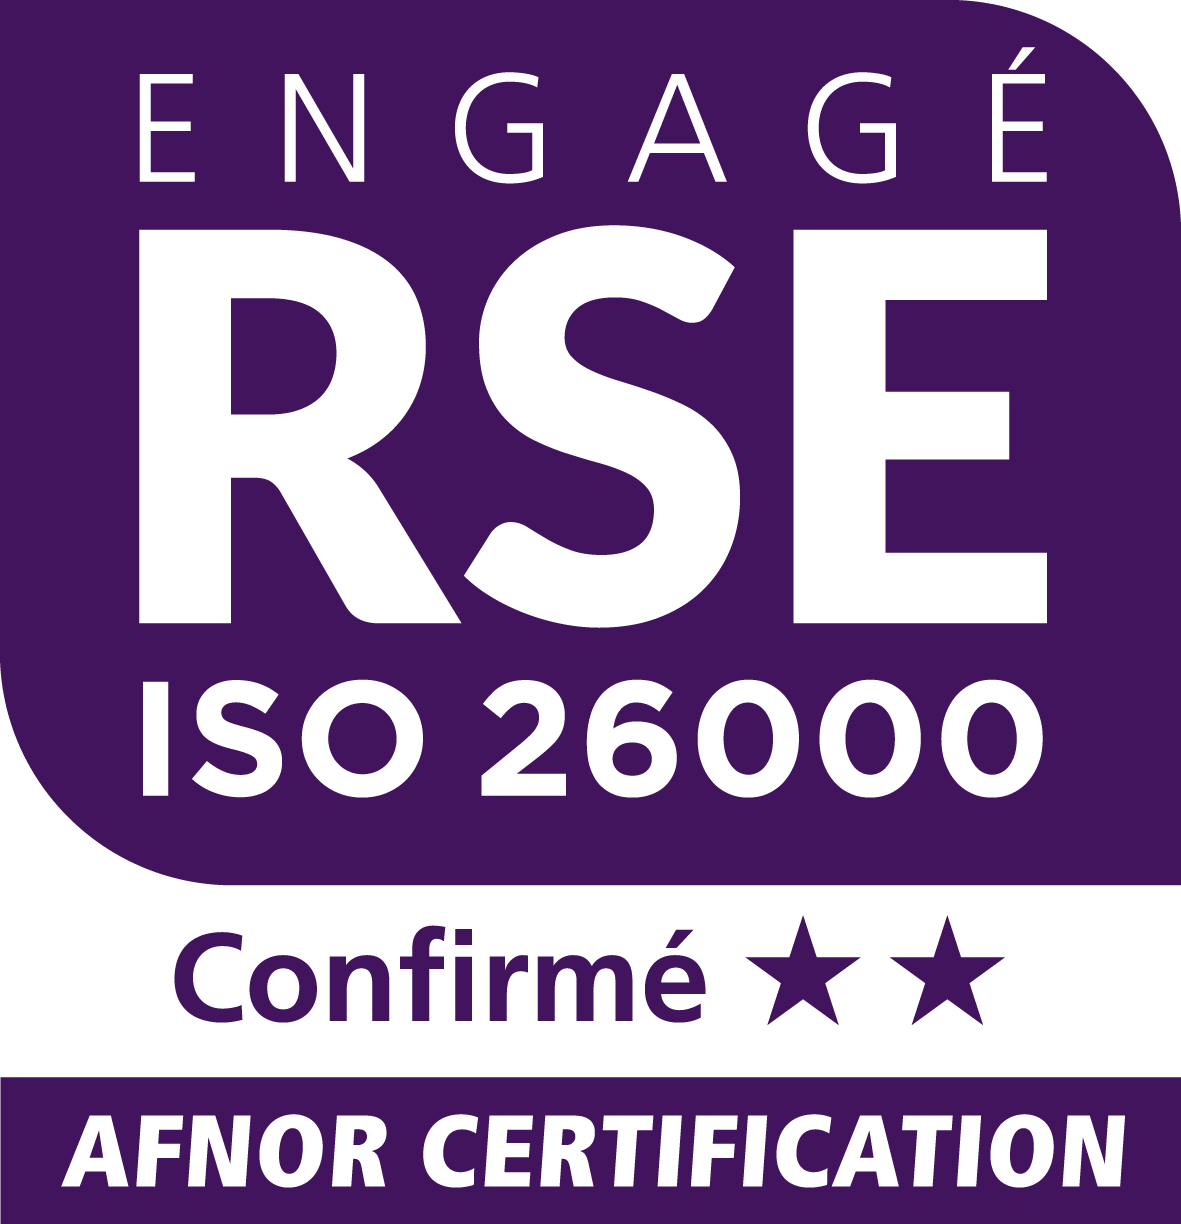 Engagé RSE Confirmé AFNOR Certification, Entreprise engagée dans une démarche RSE